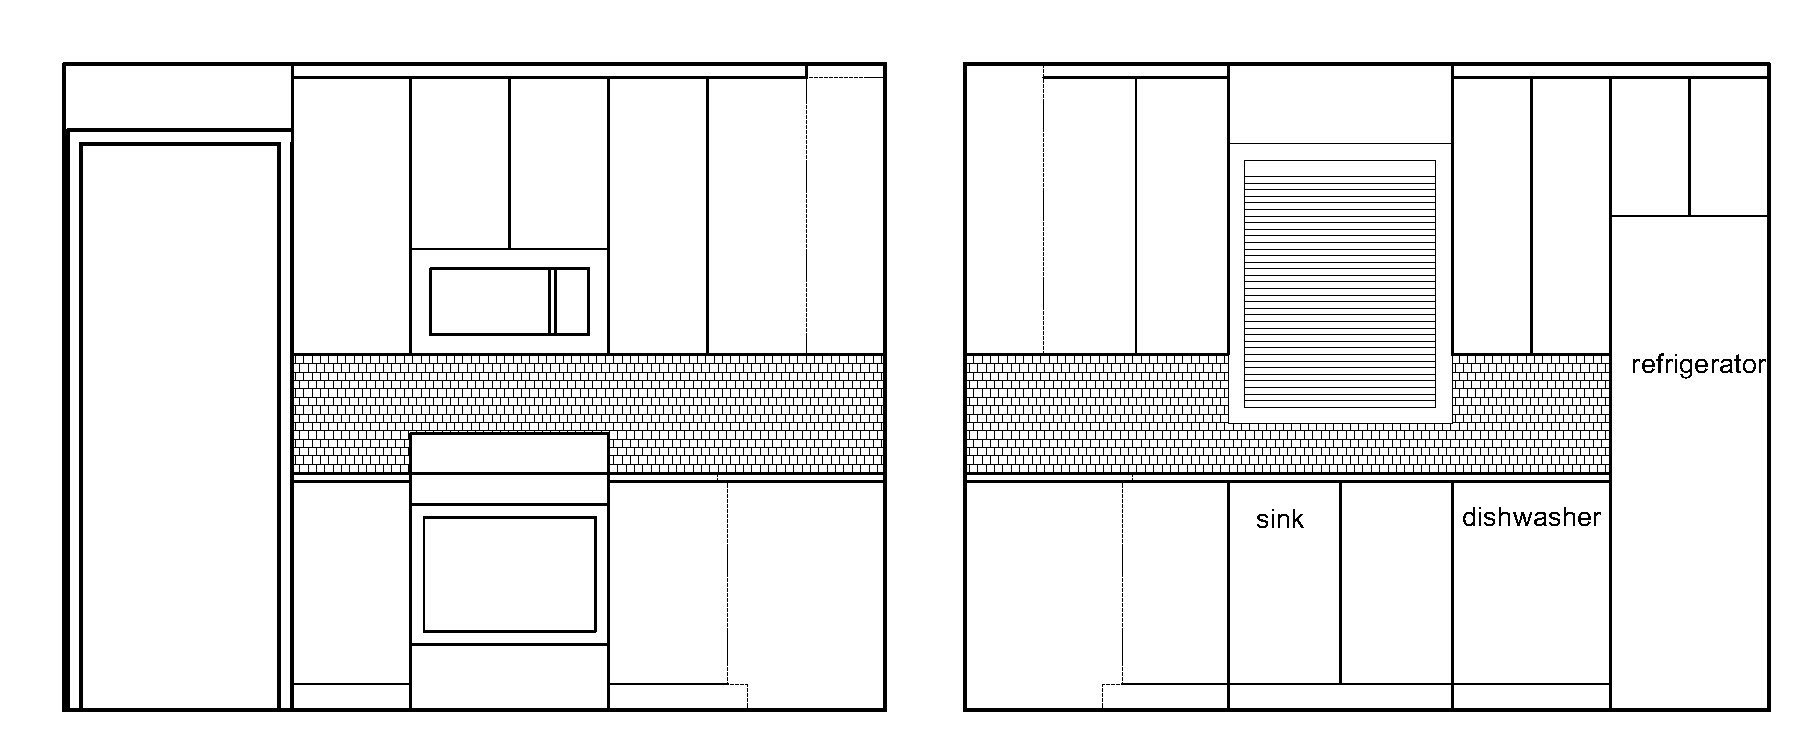 Maynard kitchen elevations (1).jpg